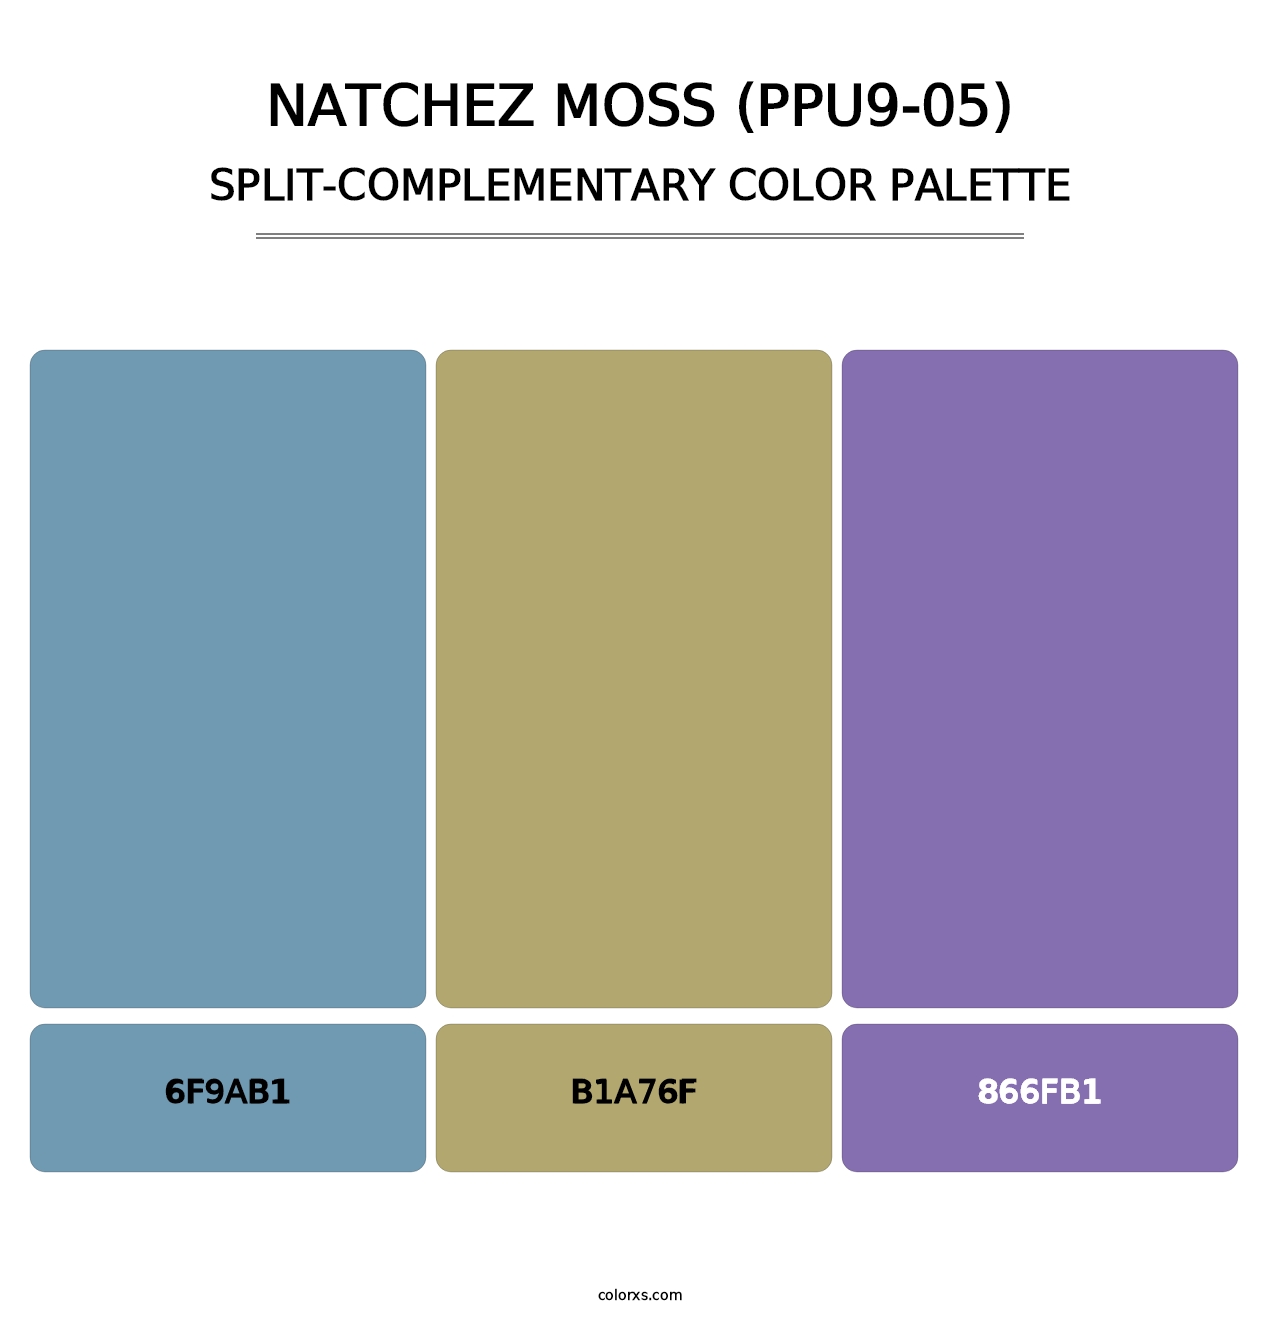 Natchez Moss (PPU9-05) - Split-Complementary Color Palette